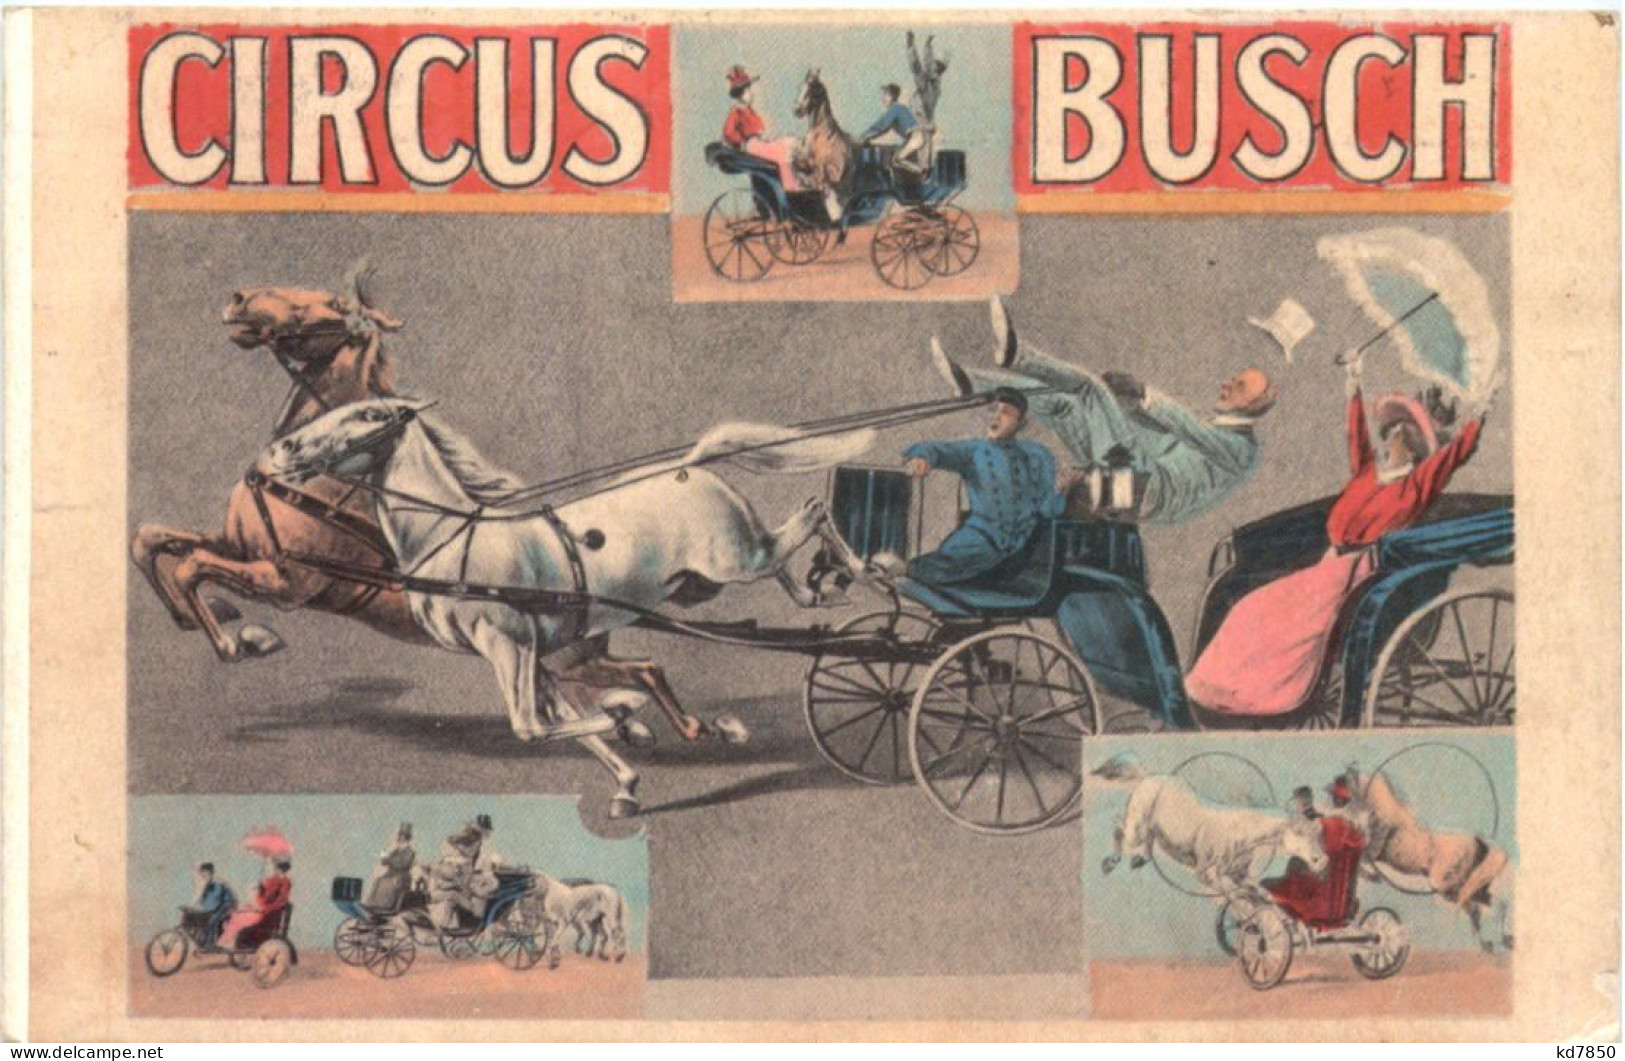 Circus Busch - Circus